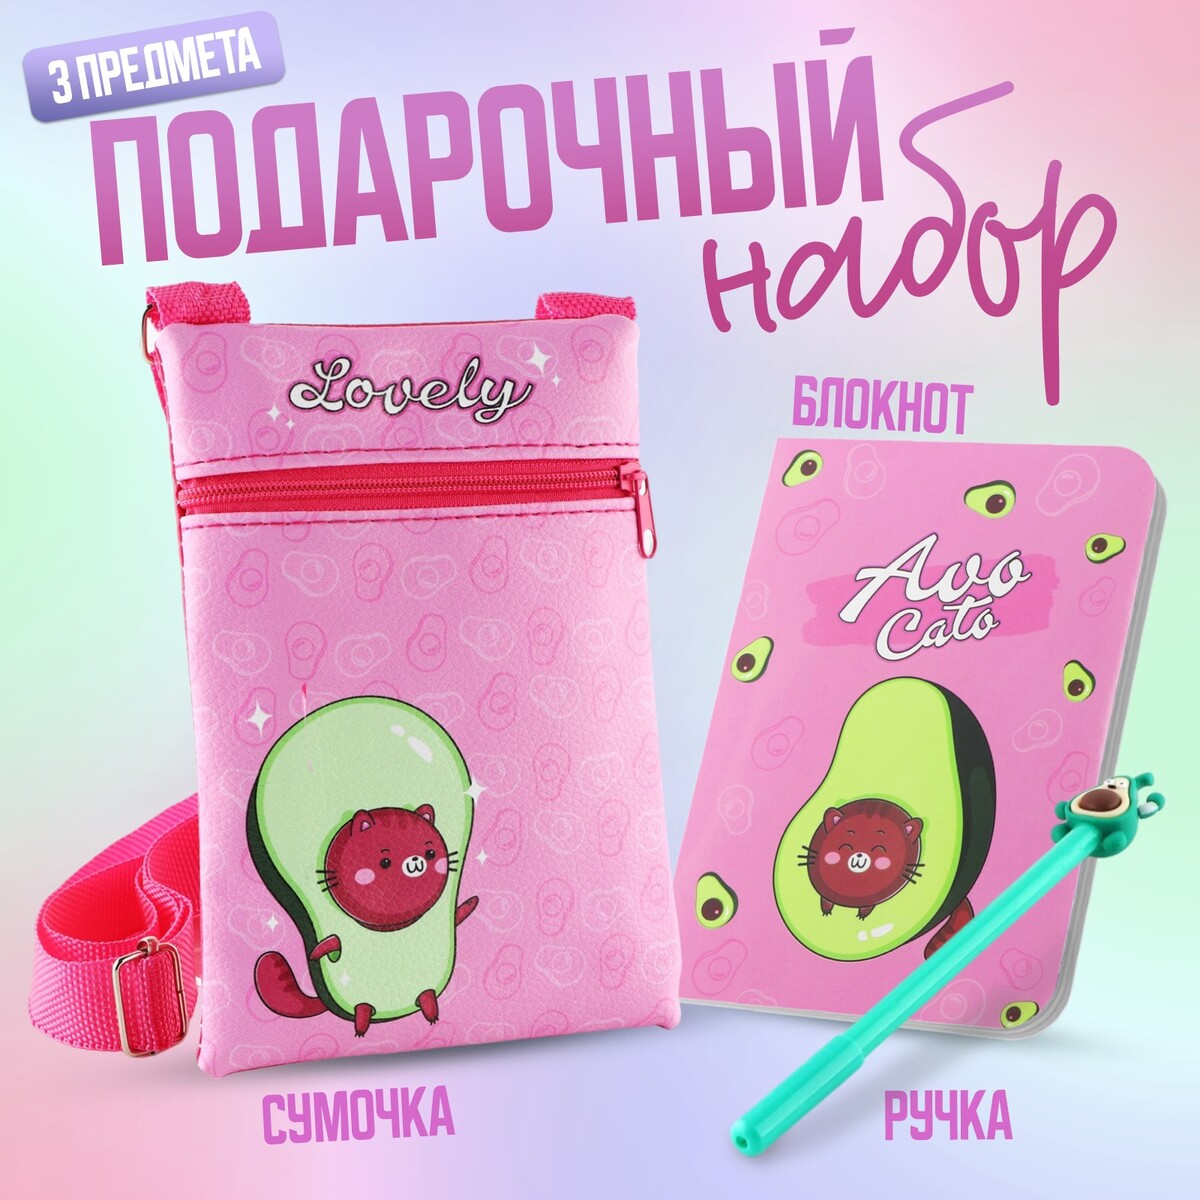 Набор для девочки авокадо: сумка, ручка, блокнот, цвет розовый joyarty сумка авоська нежные объятия девочки с кошечкой 46x65x7 см